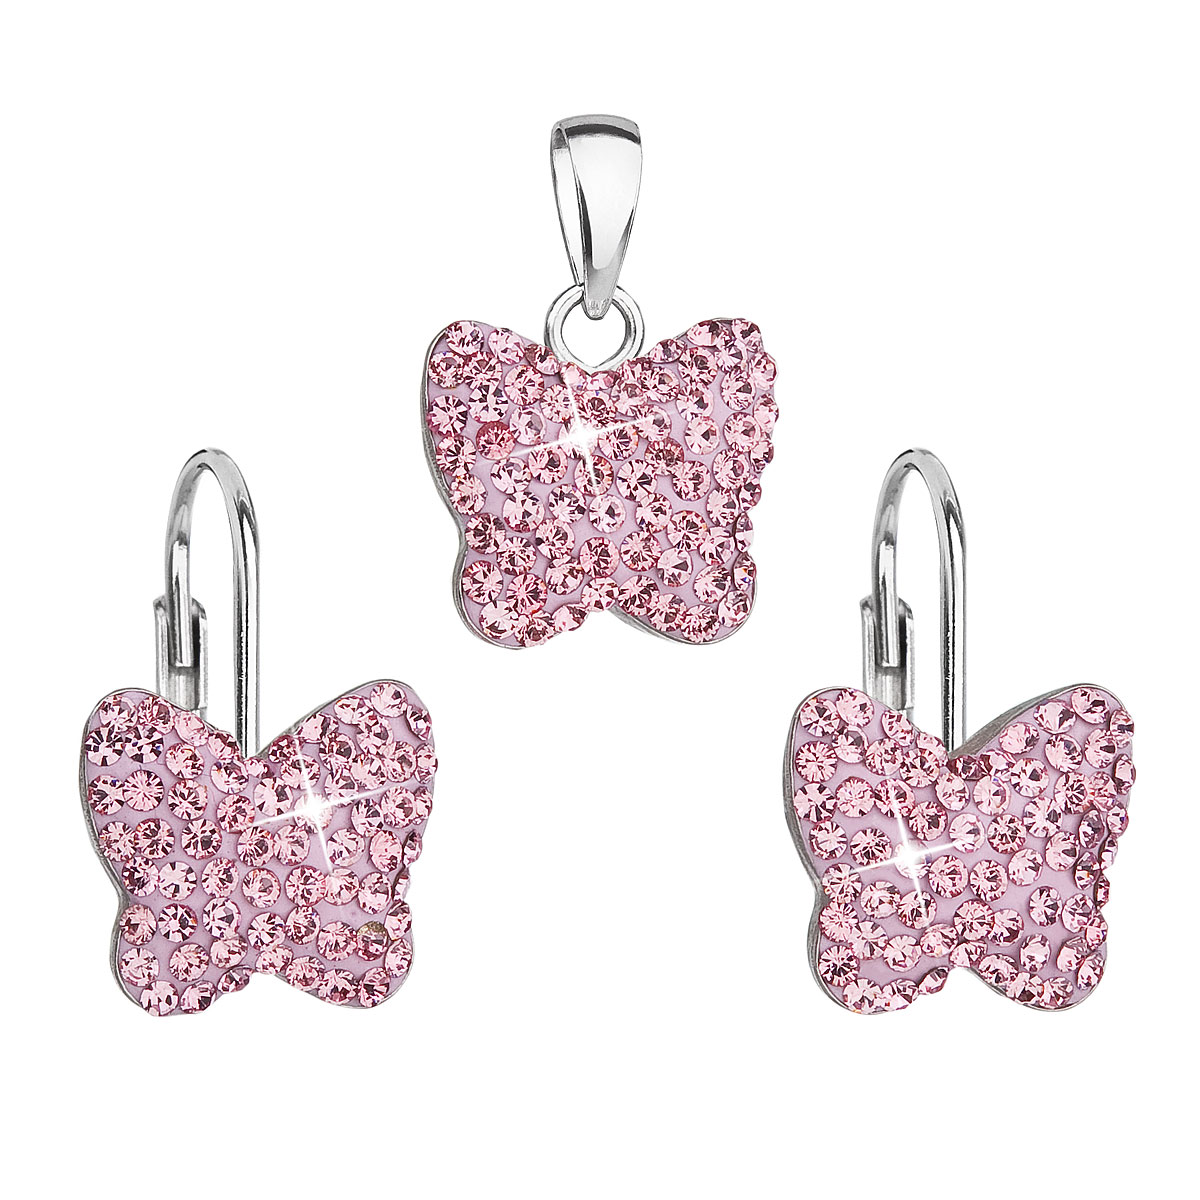 Evolution Group Sada šperků s krystaly Swarovski náušnice a přívěsek růžový motýl 39144.3